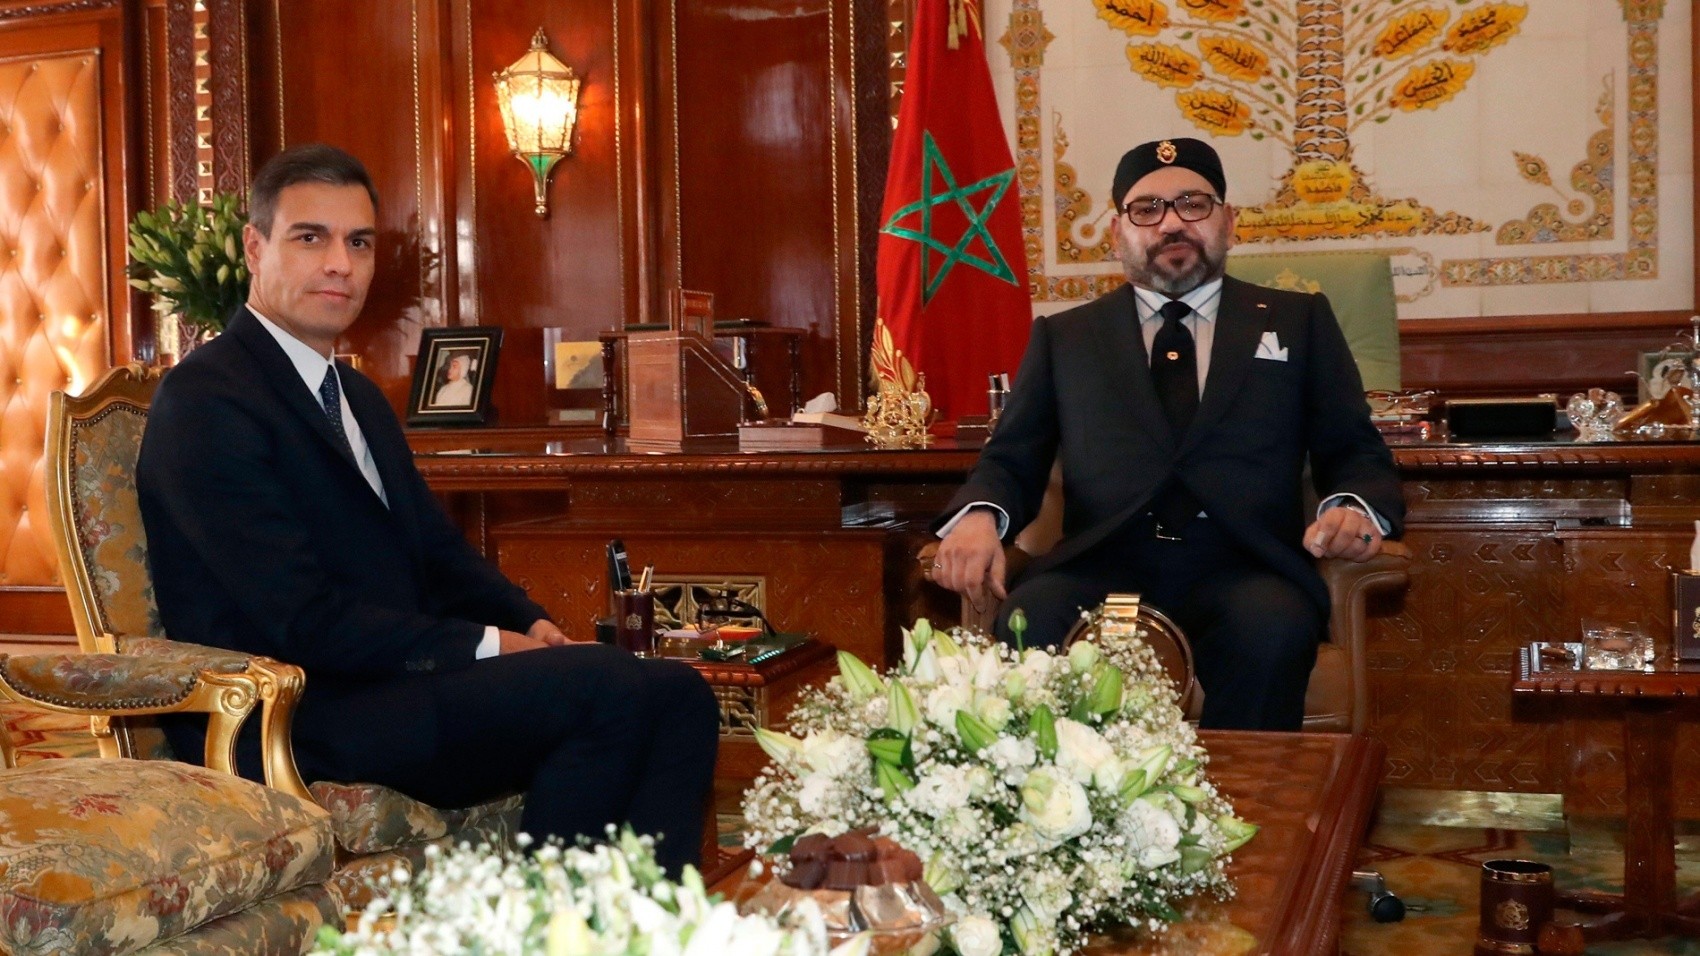 L’Espagne change de cap et reconnait le sérieux et la crédibilité du plan marocain d’autonomie pour le Sahara